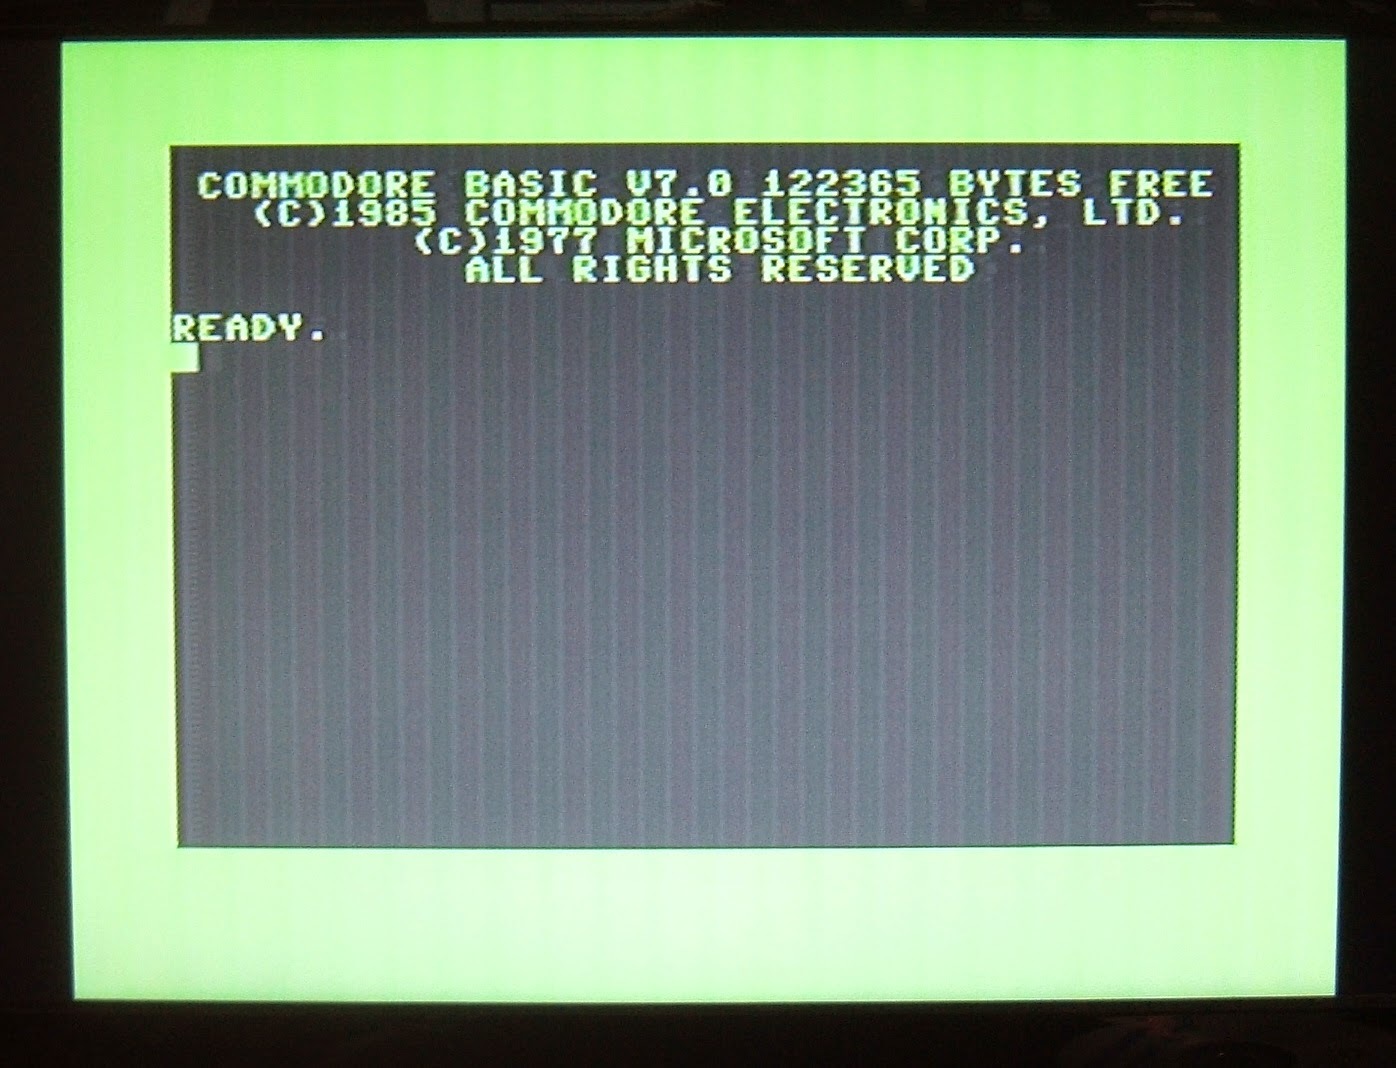 16 GB Microsd Card Deluxe Commodore 128 Hard Drive for Raspberry Pi 2-3